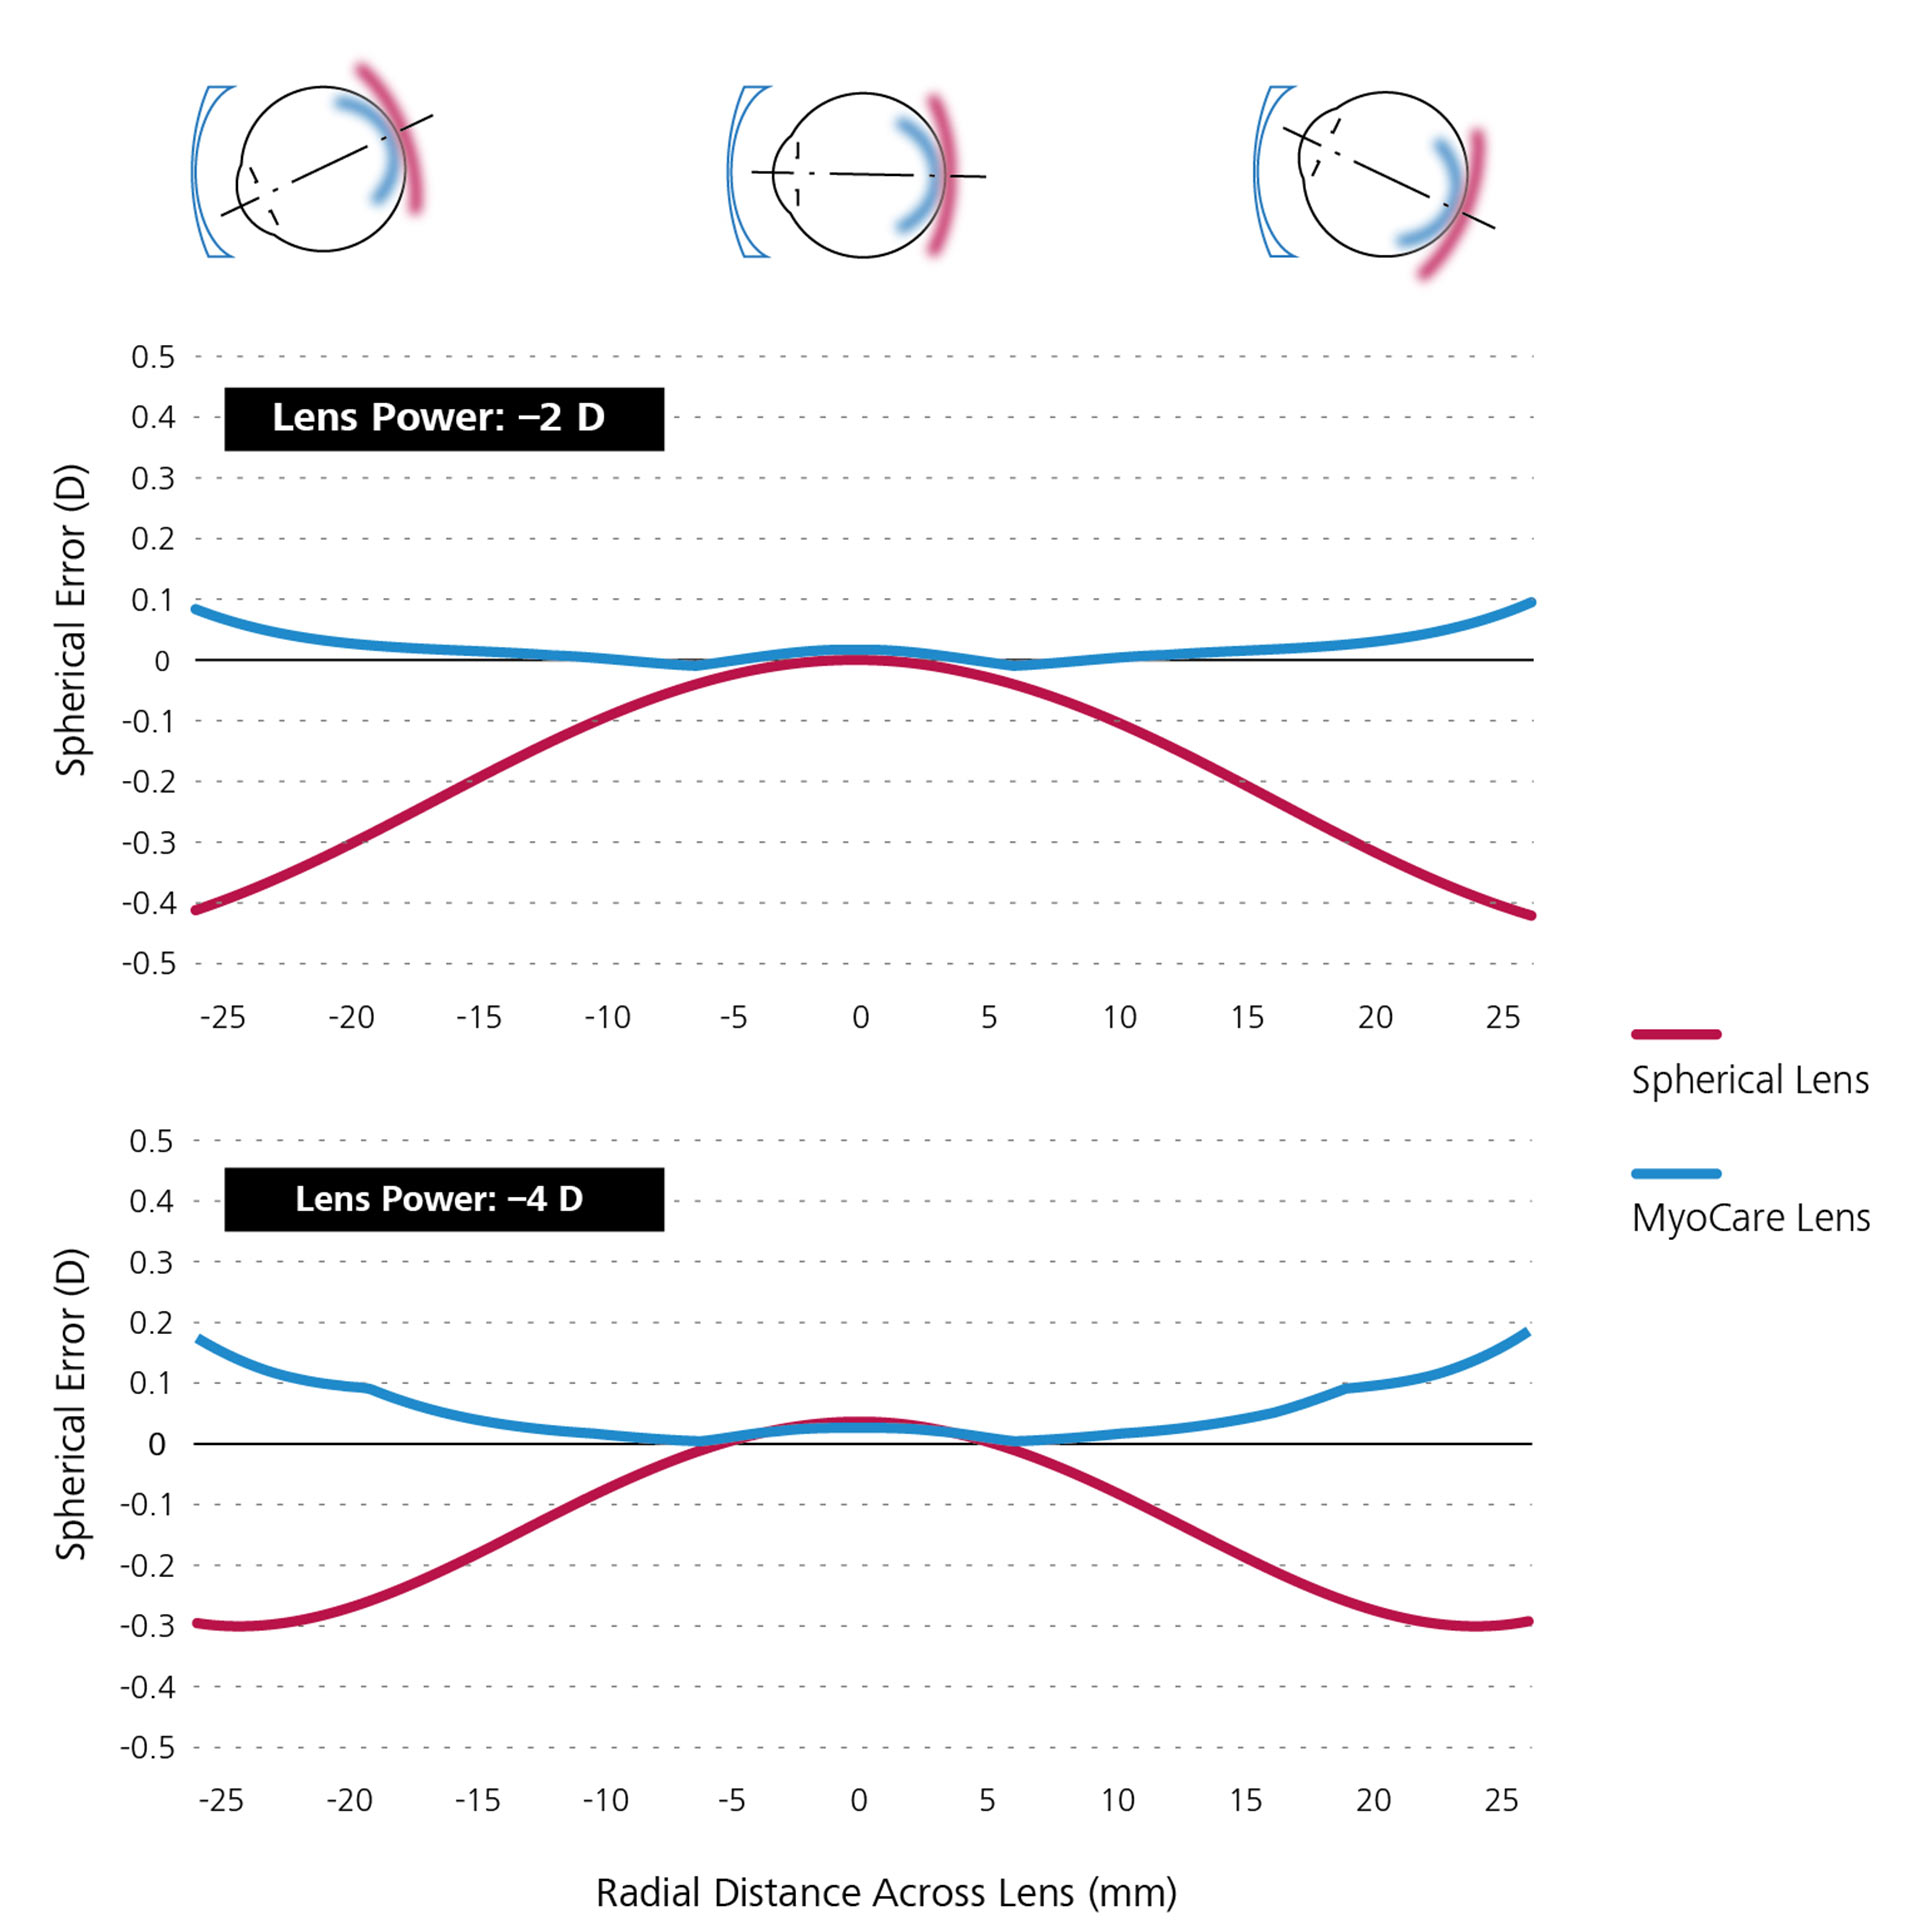 Siferik tek odaklı camların (kırmızı renkte) ve MyoCare gözlük camlarının (mavi renkte) karşılaştırmalı matematiksel simülasyonunu gösteren iki çizgi grafik.